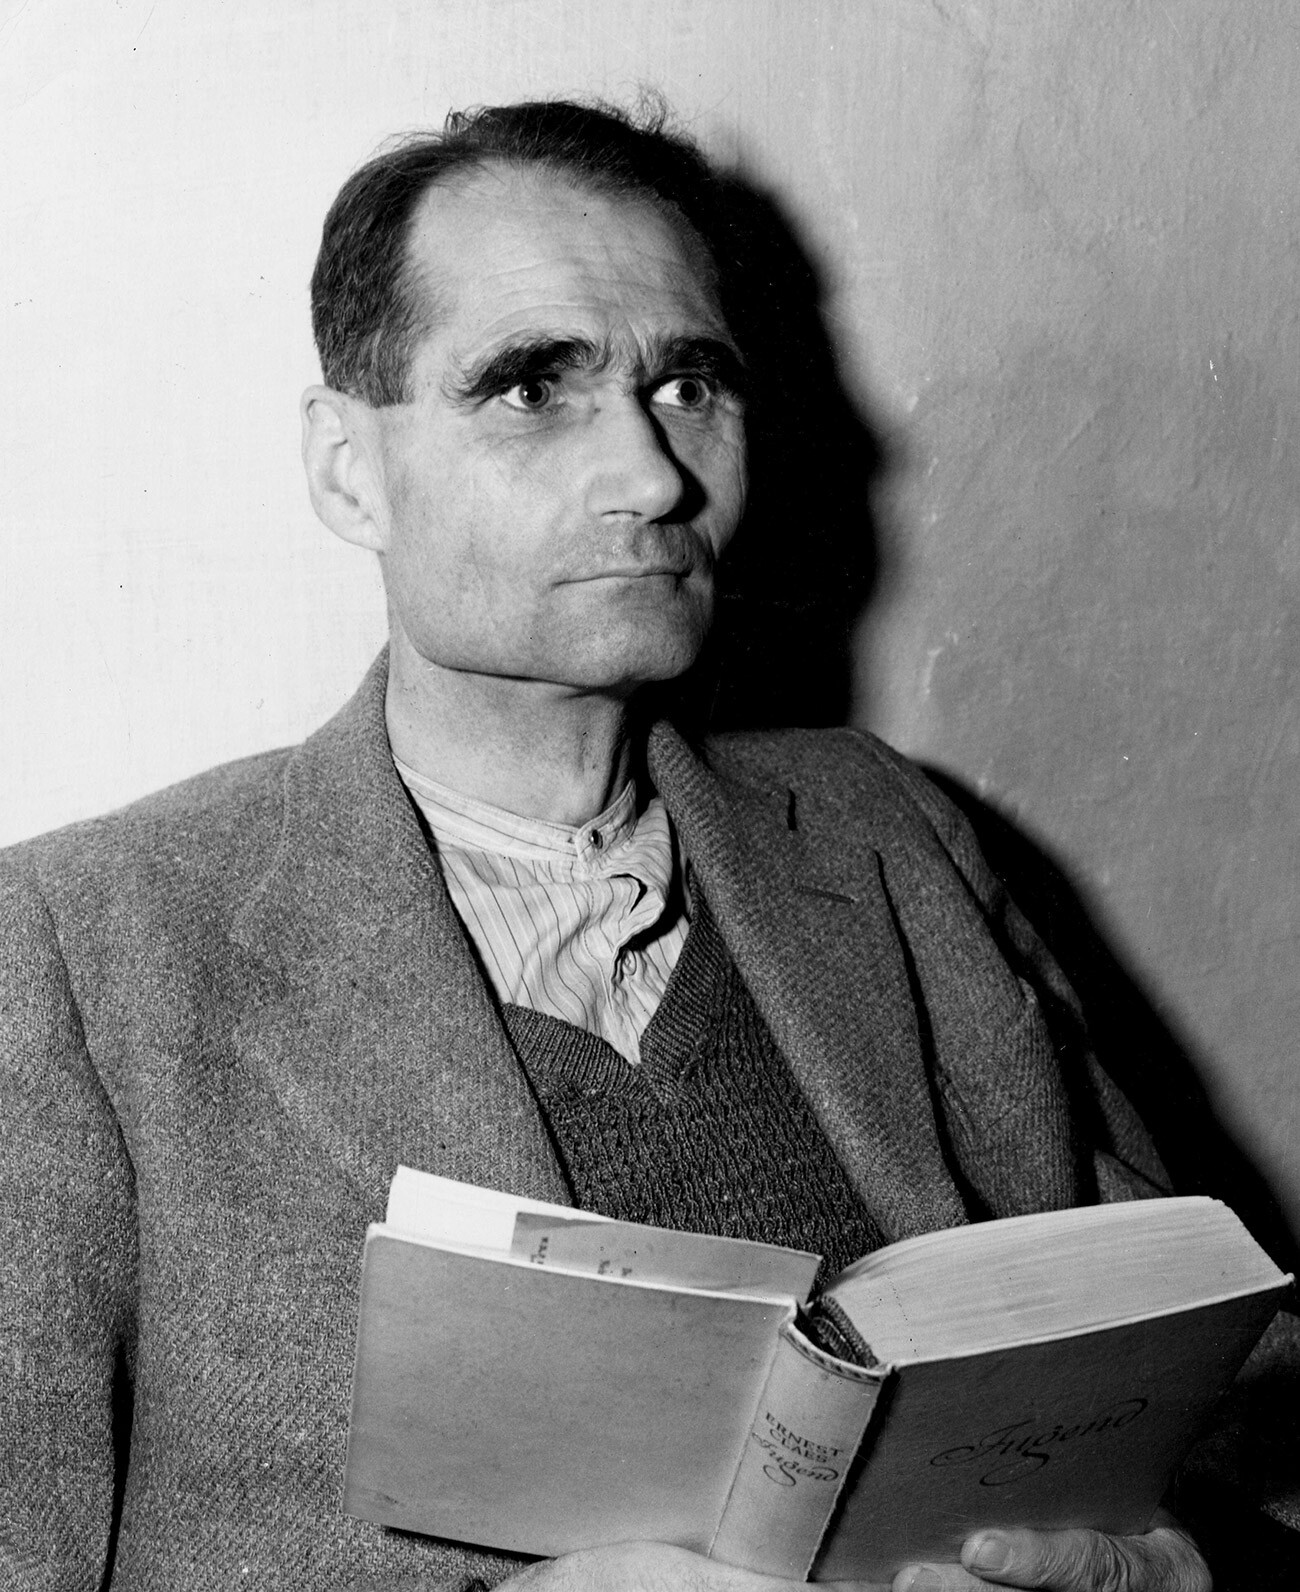 24 de novembro de 1945: Rudolph Hess (1894-1987) depois da prisão.